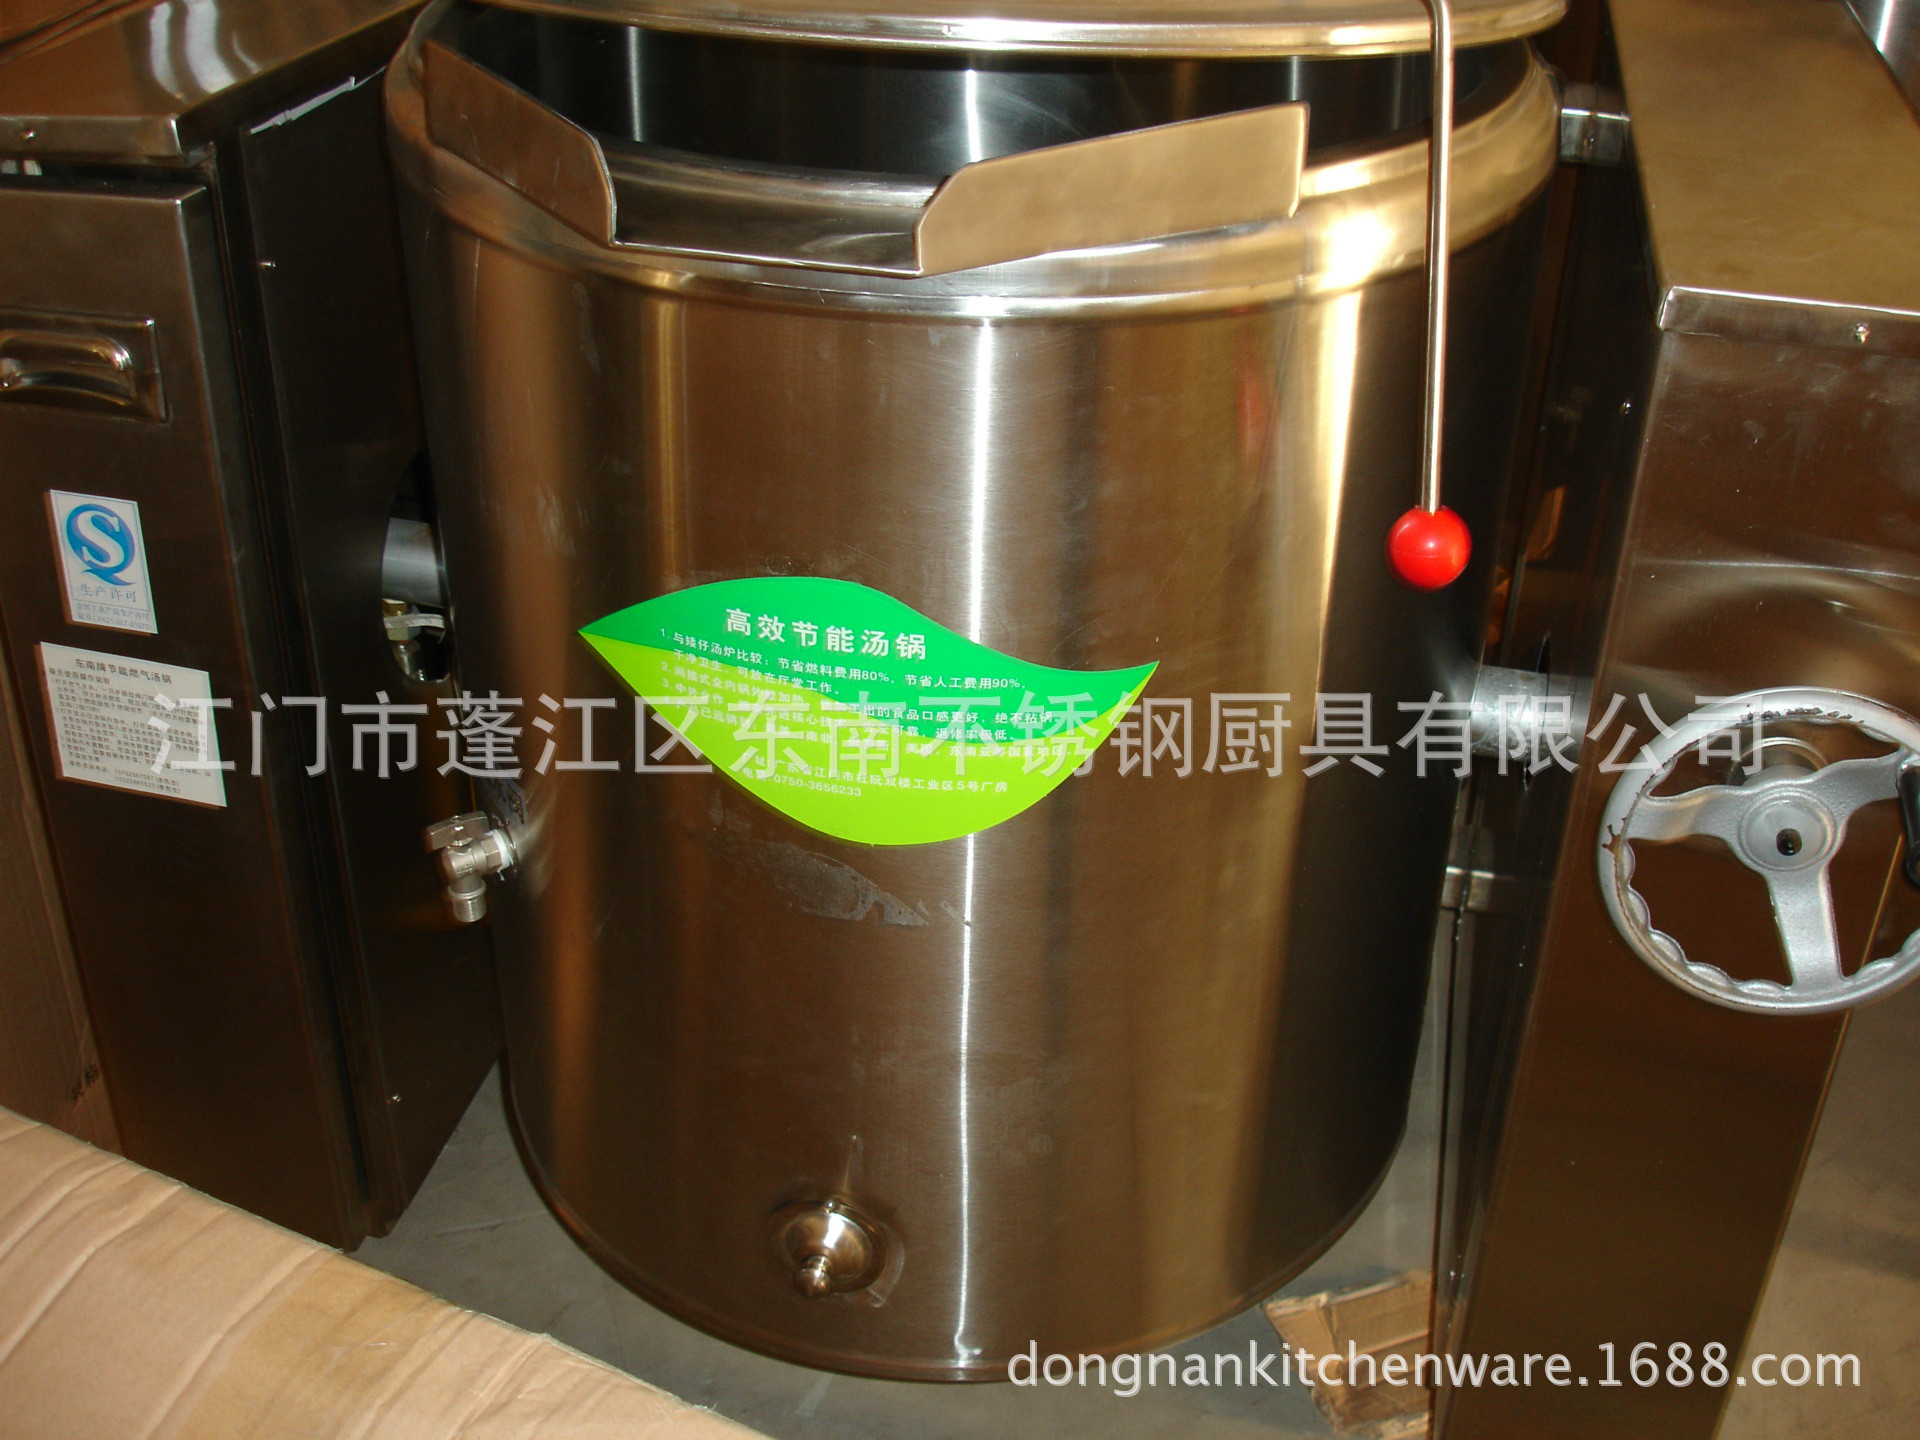 高效可倾式燃气汤粥锅 燃气式烹用设备 蒸汽夹层锅